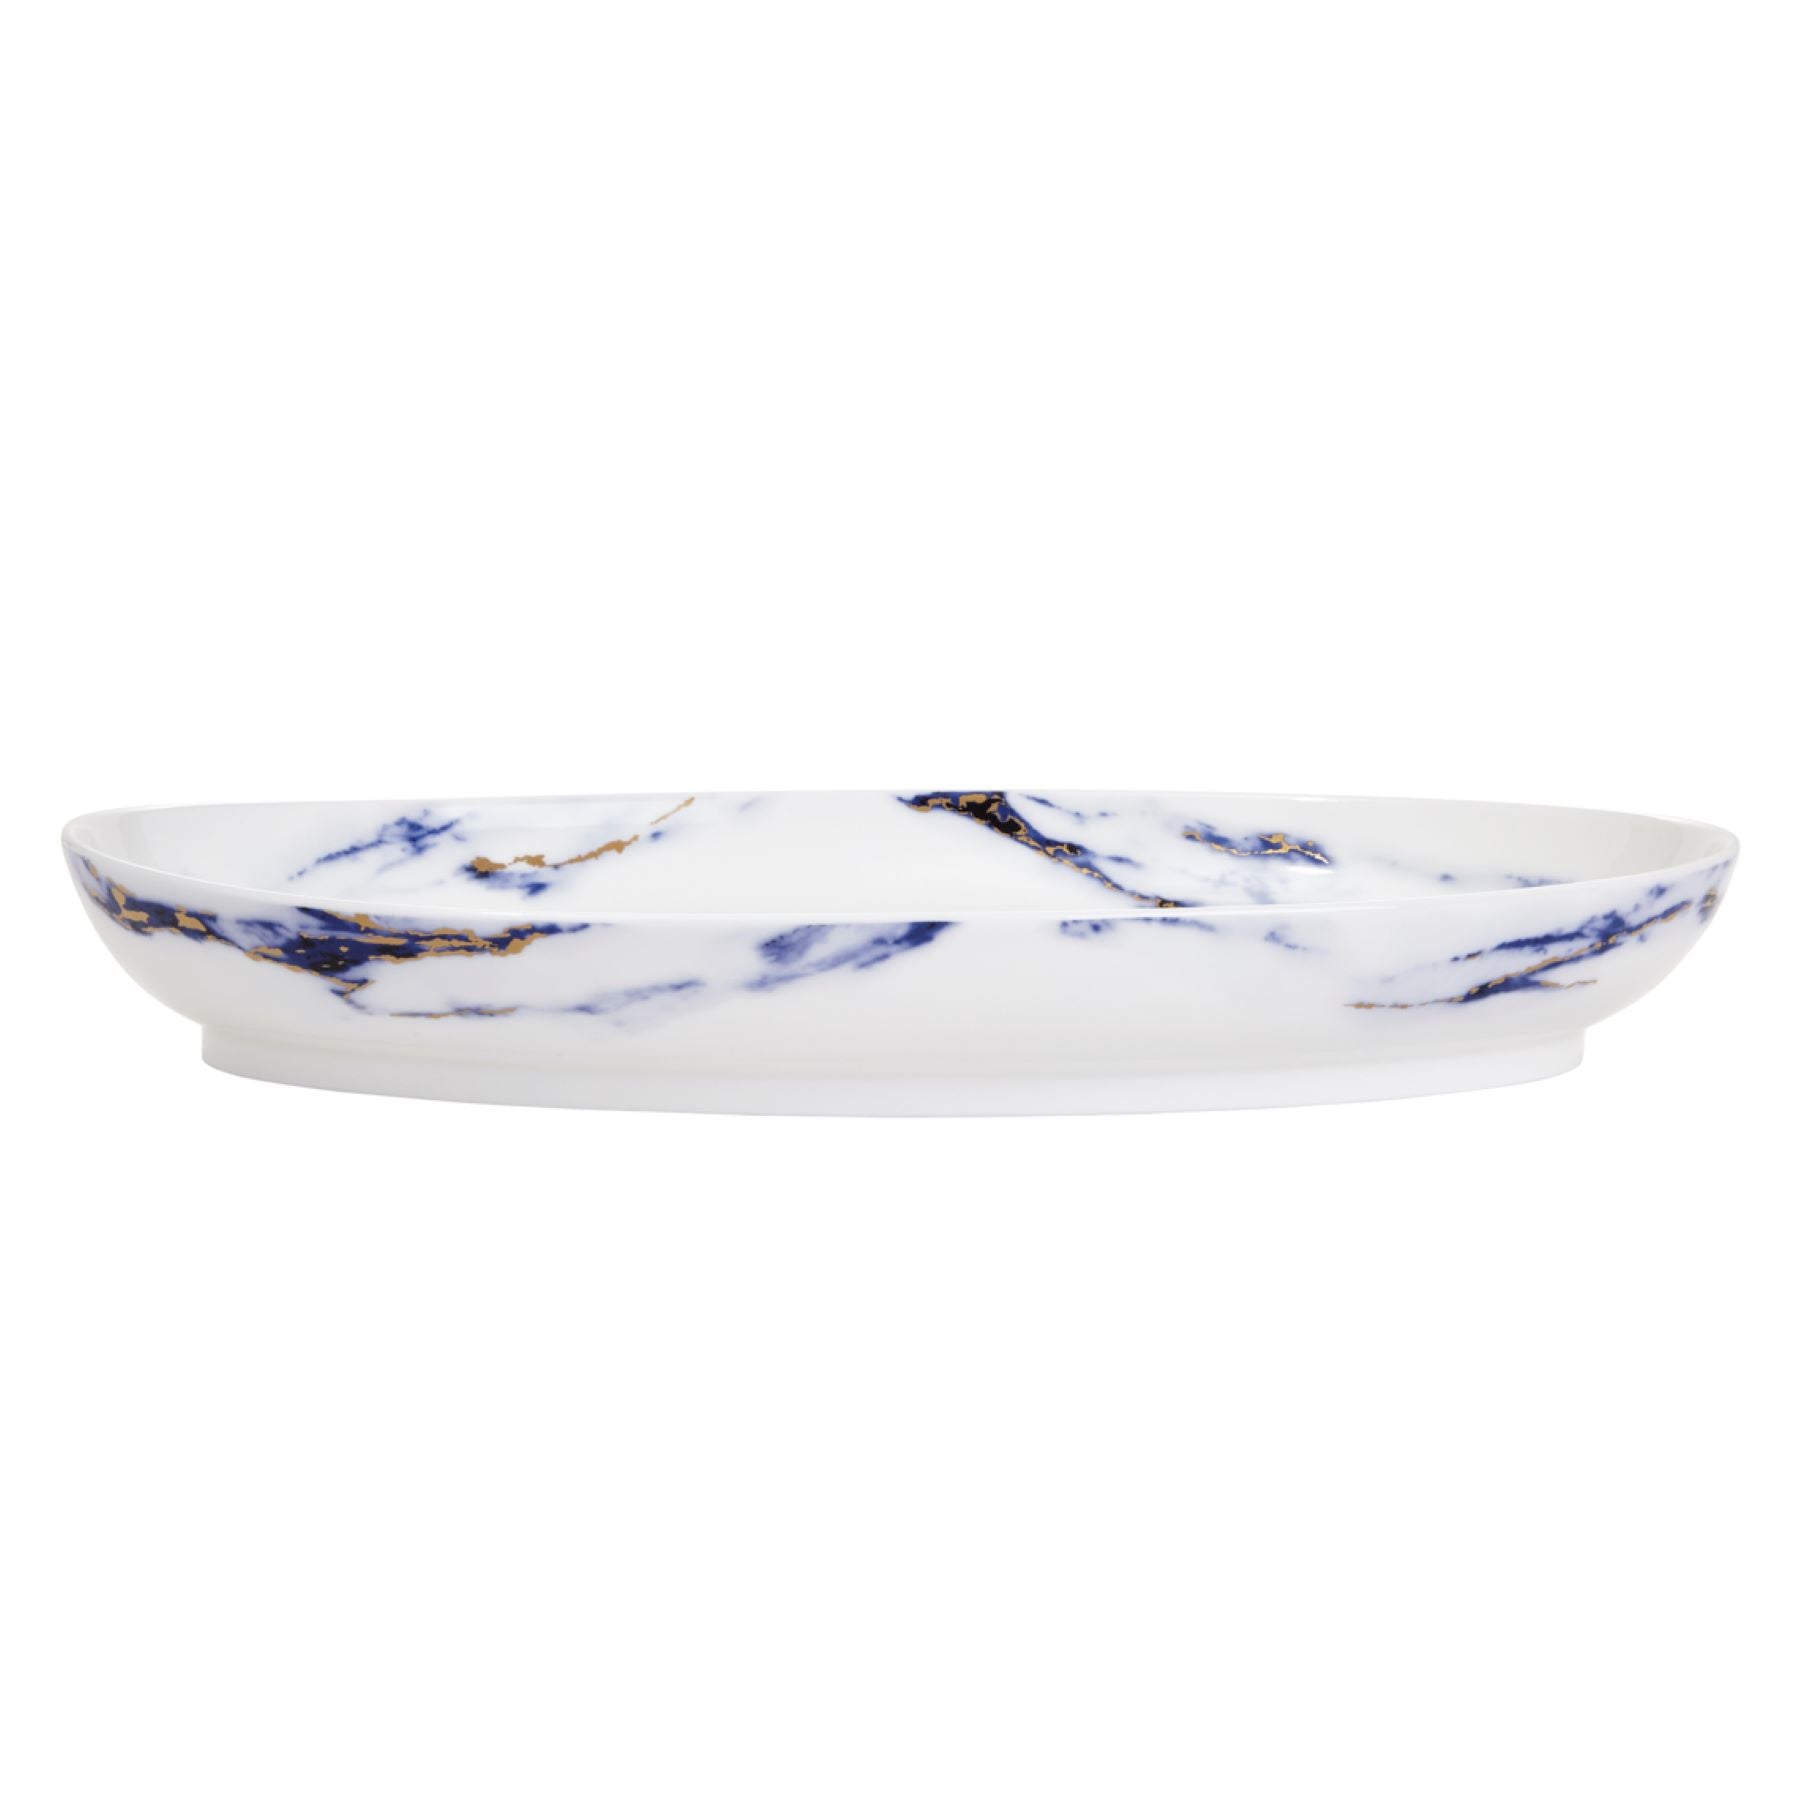 Prouna Marble Azure 16" Oval Platter White Background Photo